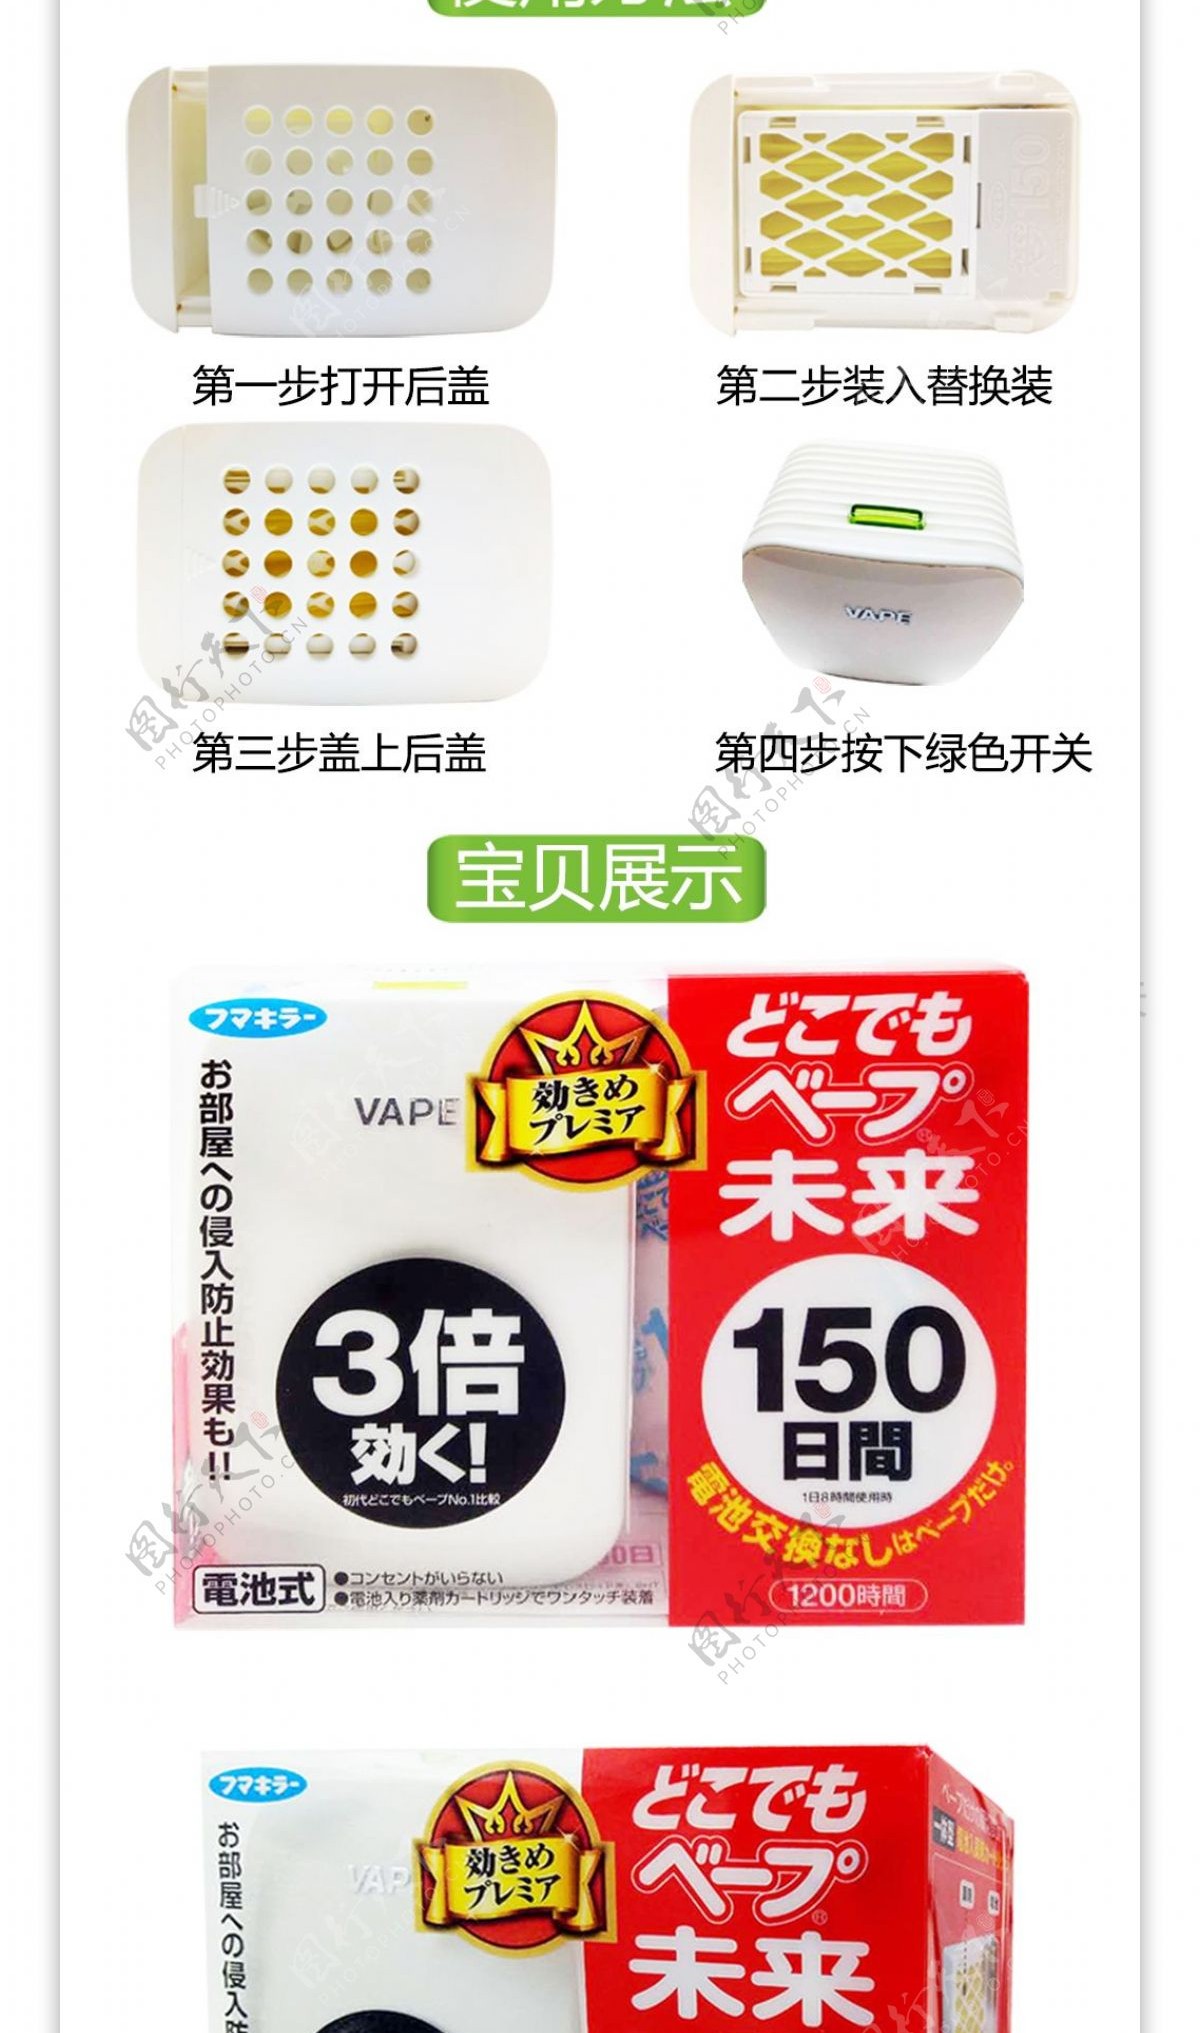 日本vape未来150日驱蚊器详情页淘宝电商